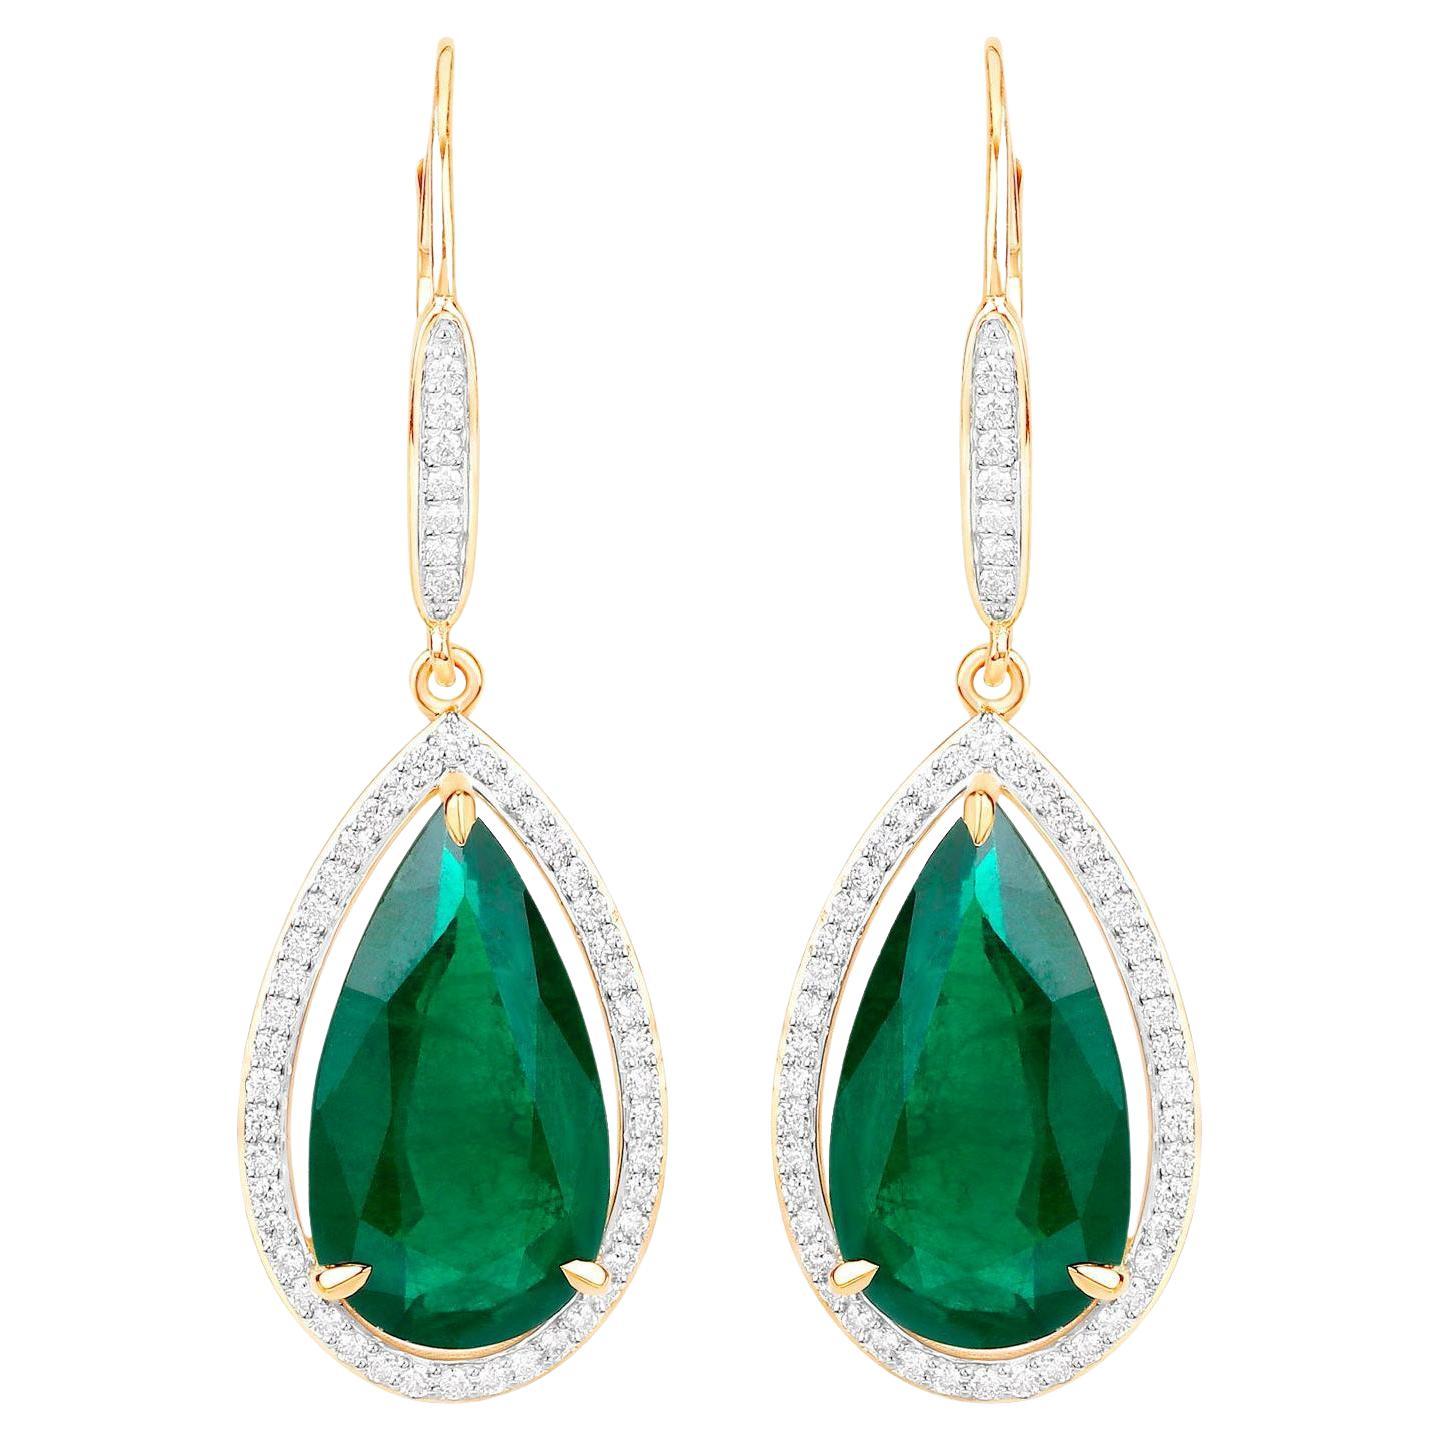 IGI zertifiziert sambischen Smaragd Ohrringe Diamanten 16,15 Karat 14K Gelb G